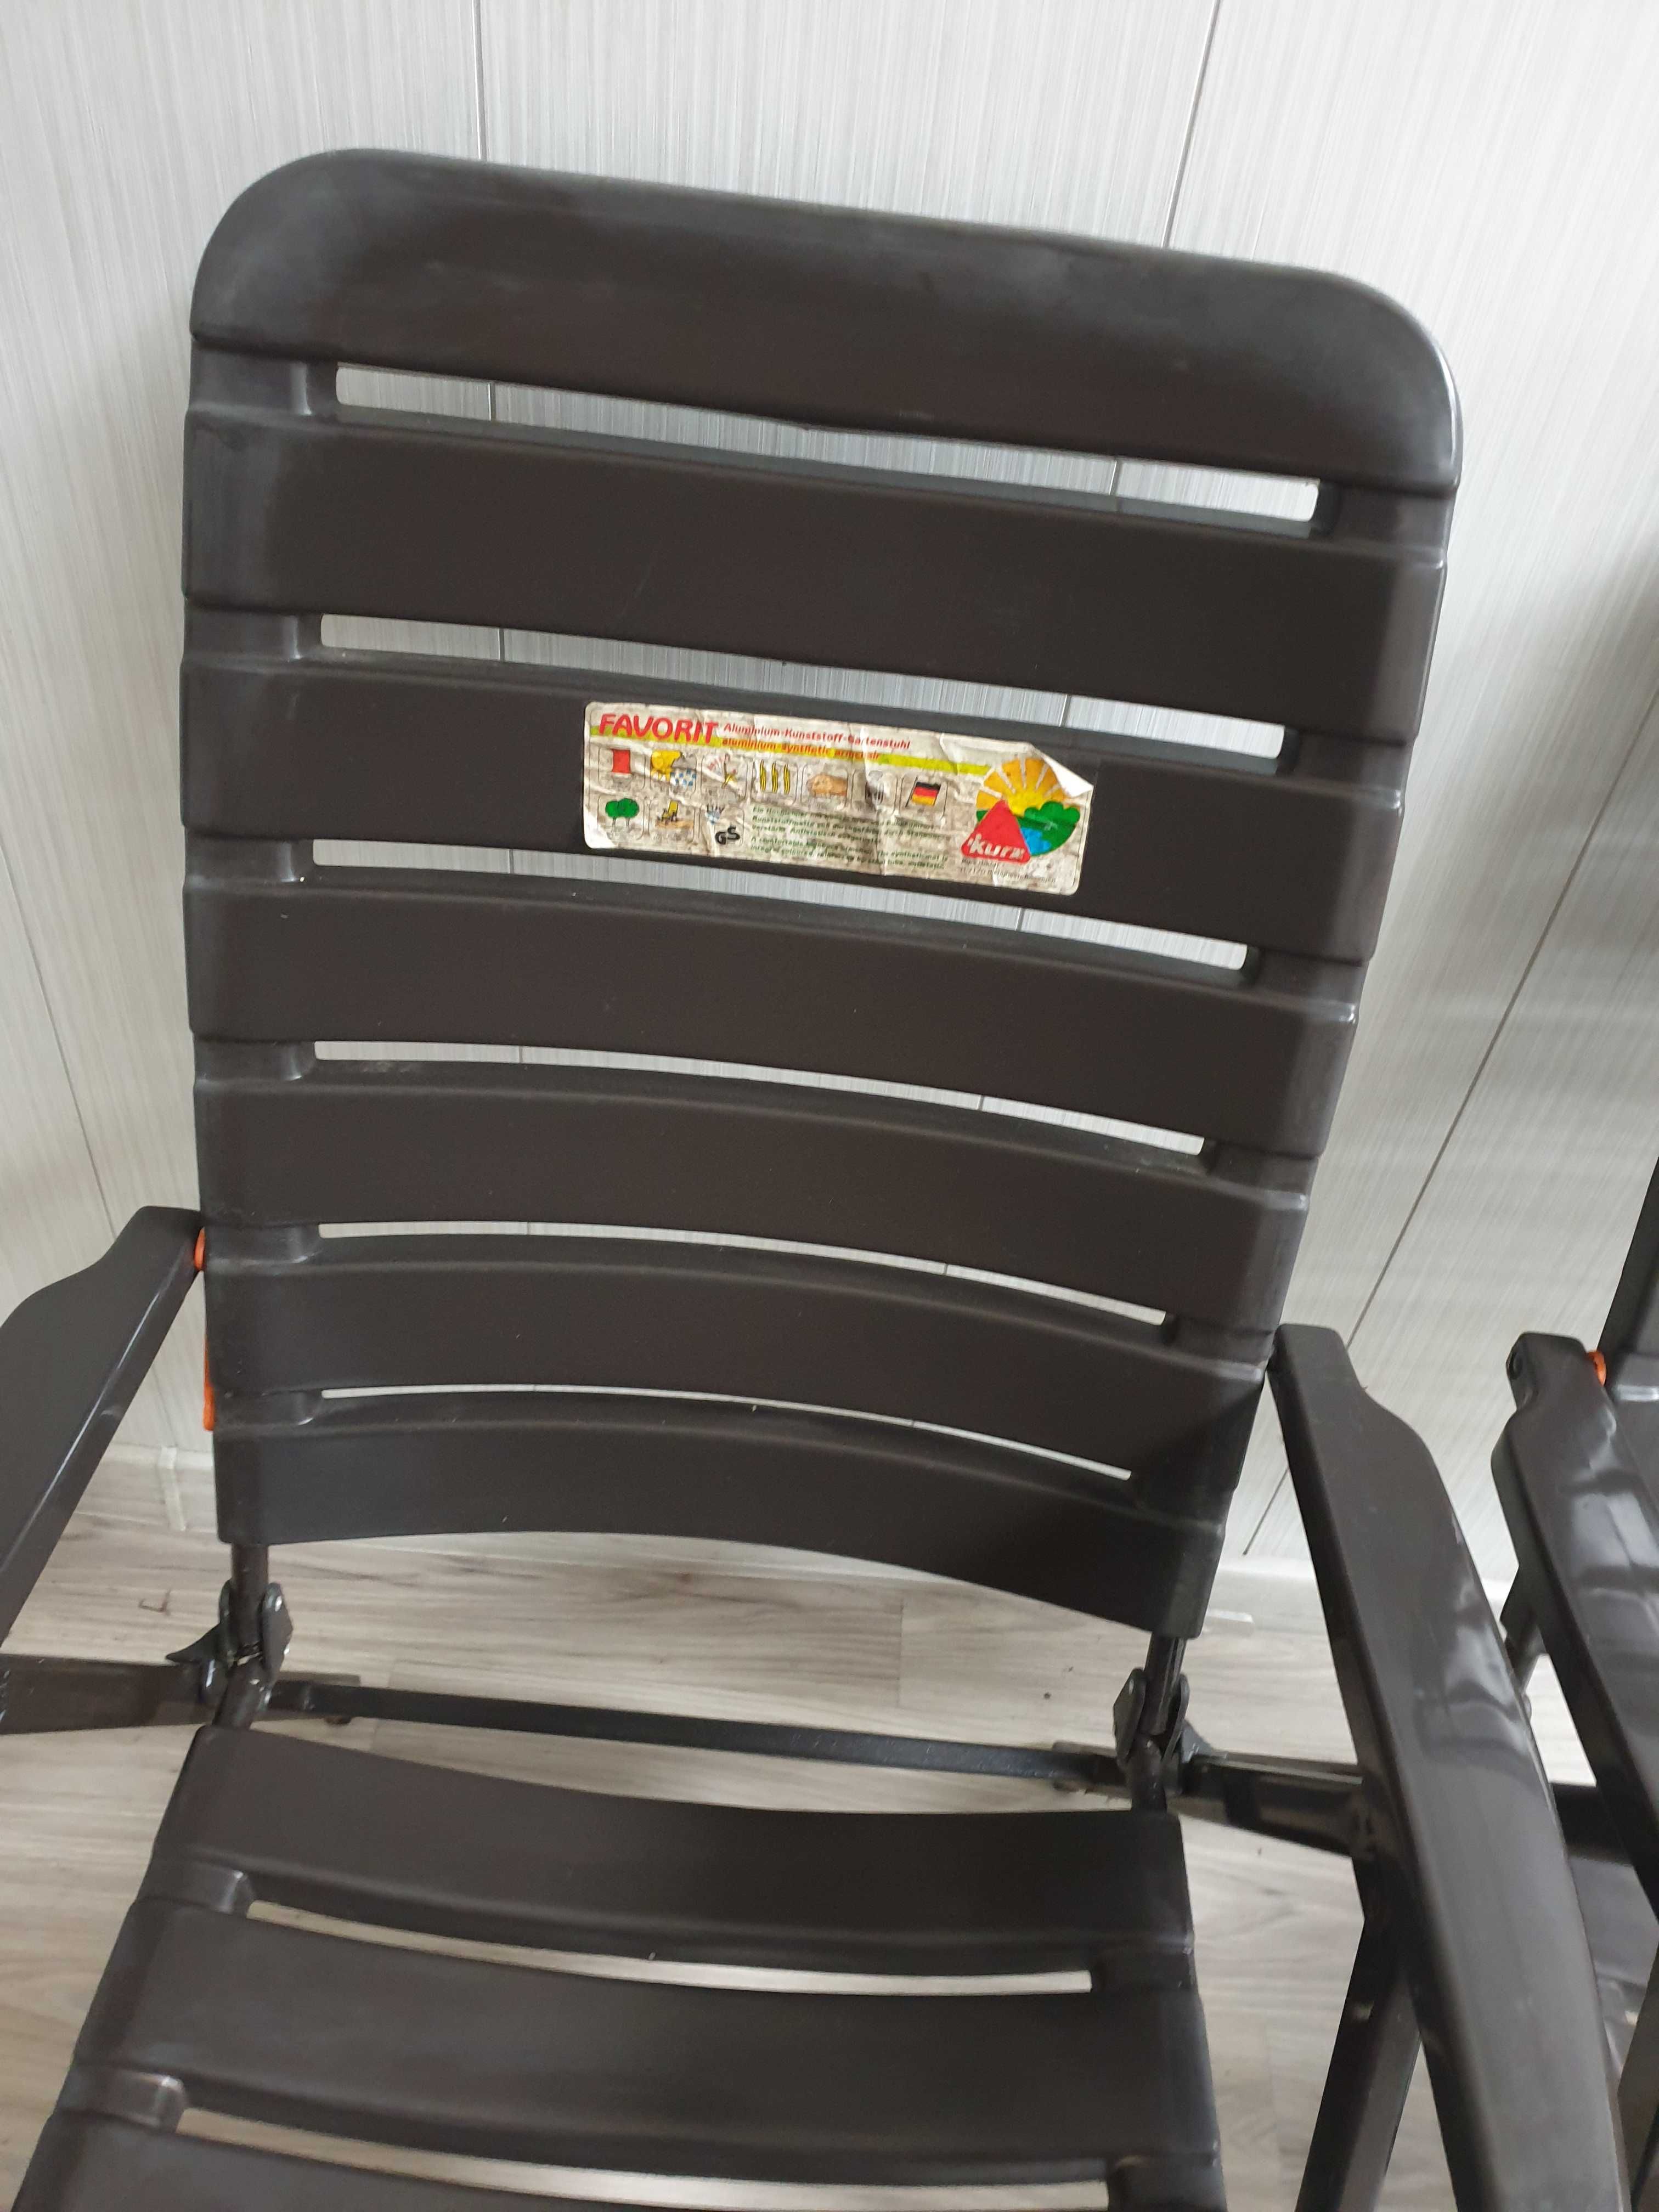 krzesło leżak aluminiowy lekki składany turystyczny KURZ RETRO lata 80